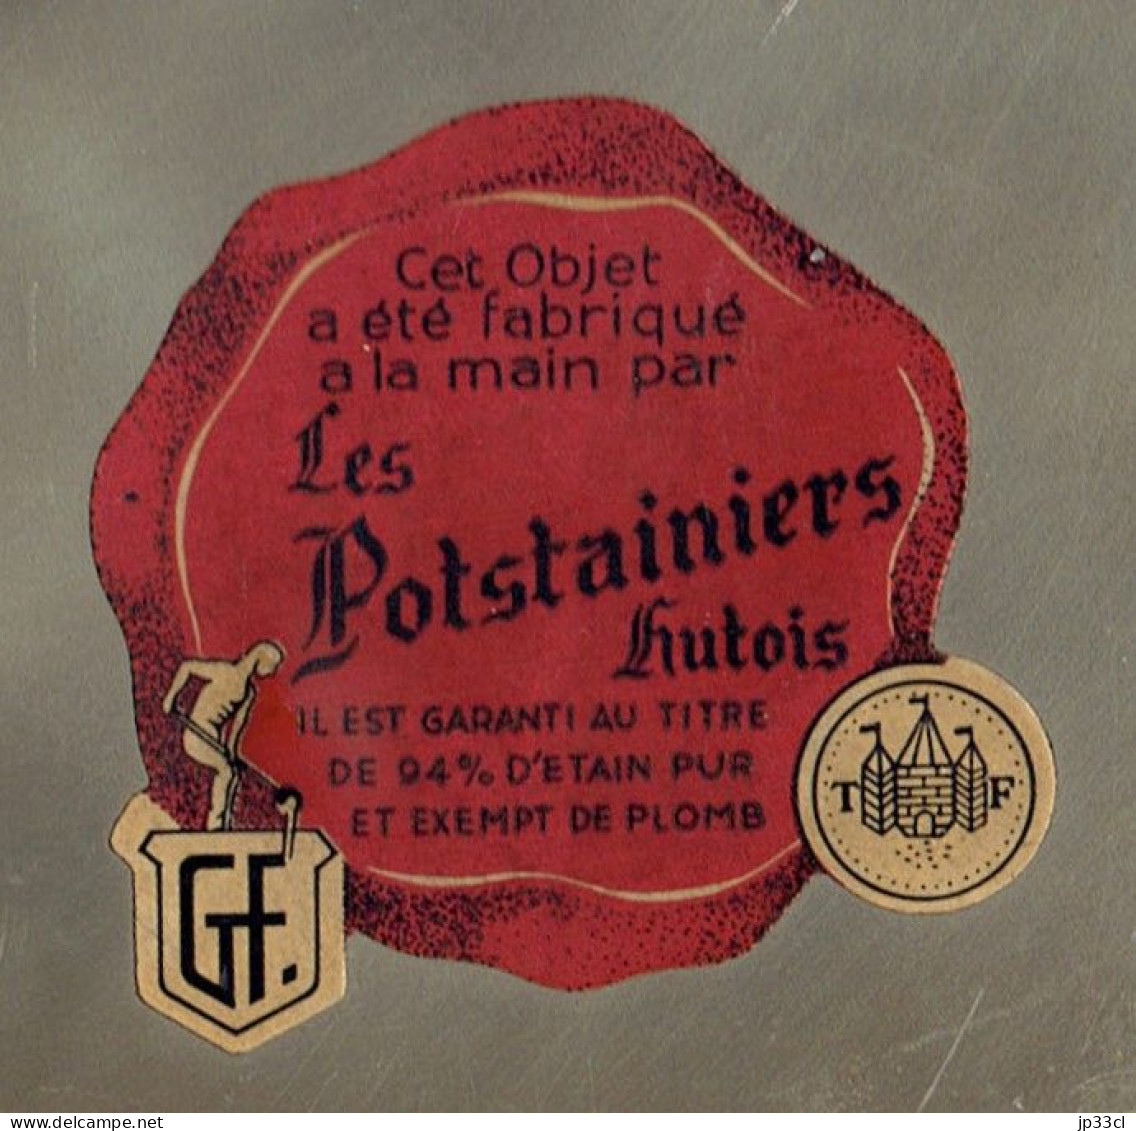 Grande Assiette En étain Des Potsstainiers Hutois (Fabriquée Main, 94% D'étain, Exempte De Plomb) - Arte Contemporáneo